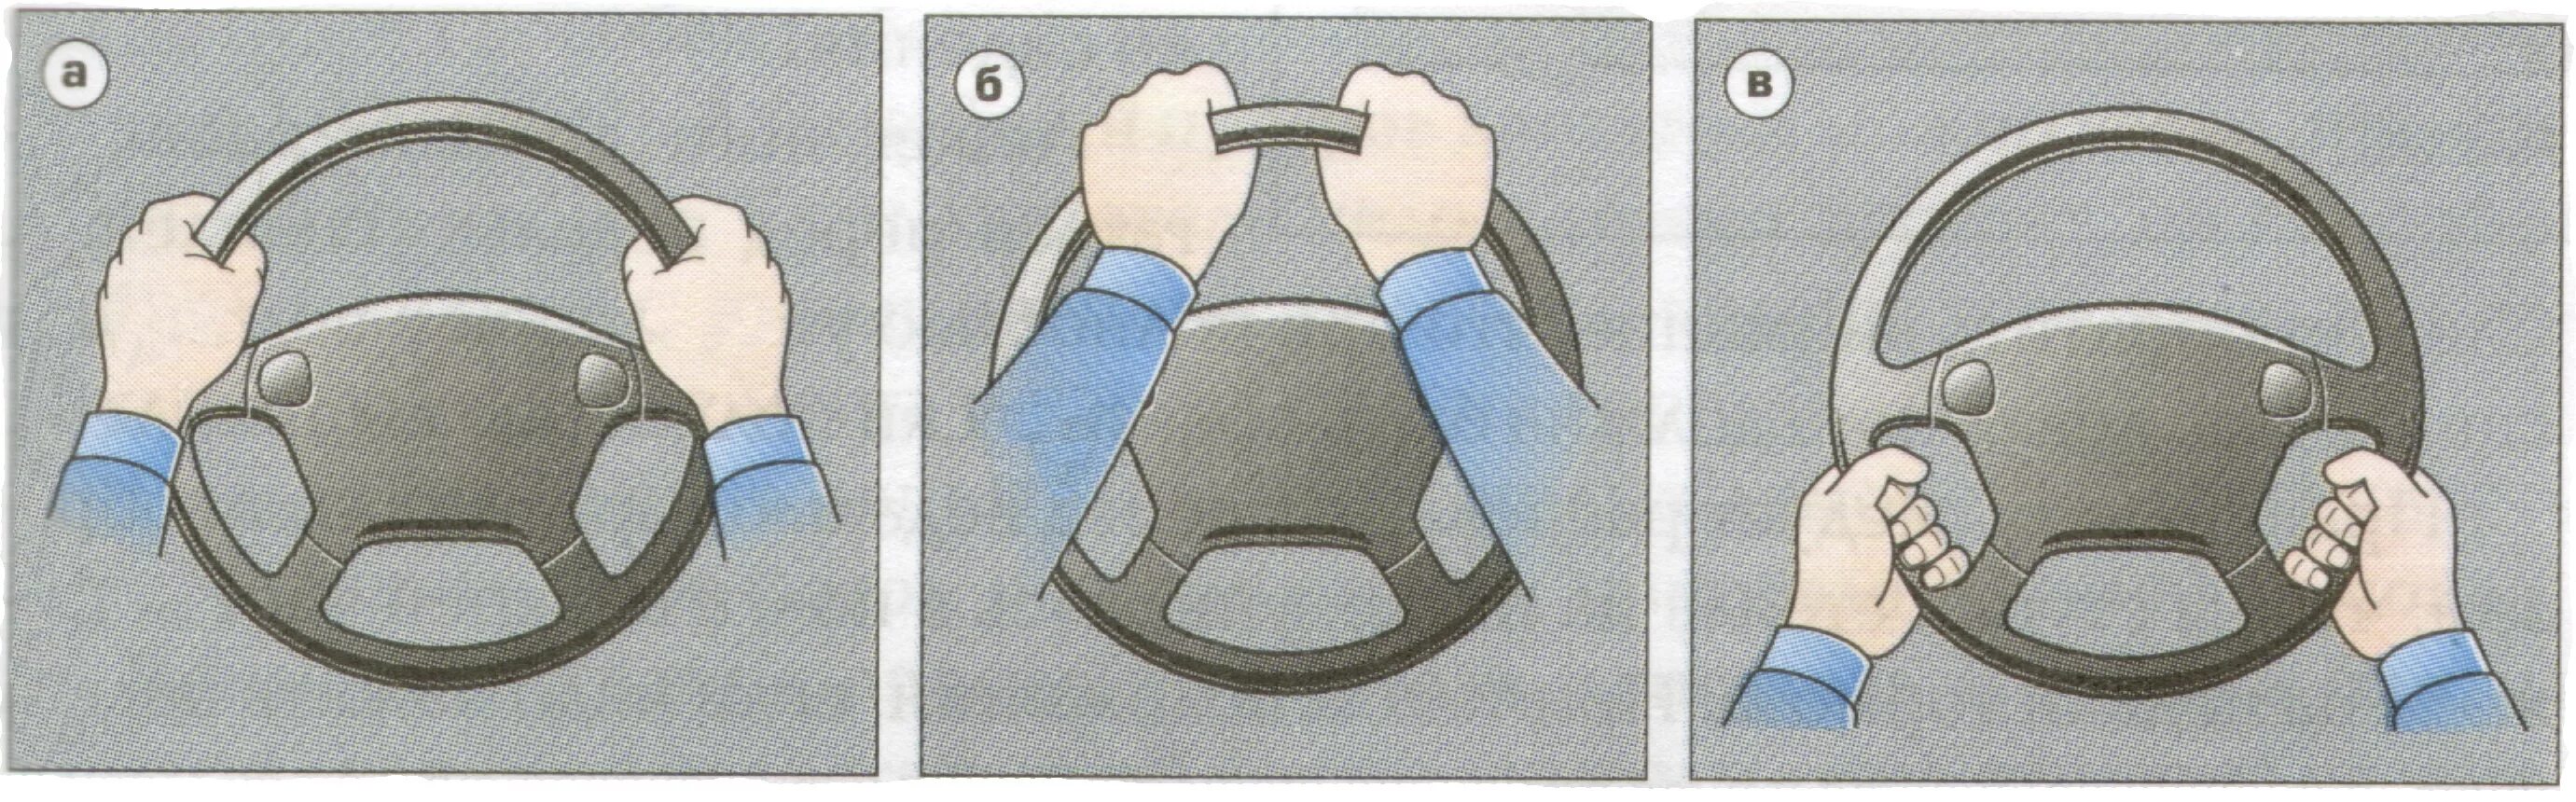 Как правильно держать руль. Положение рук на руле. Правильное положение рук на руле автомобиля. Положение рук на рулевом колесе.